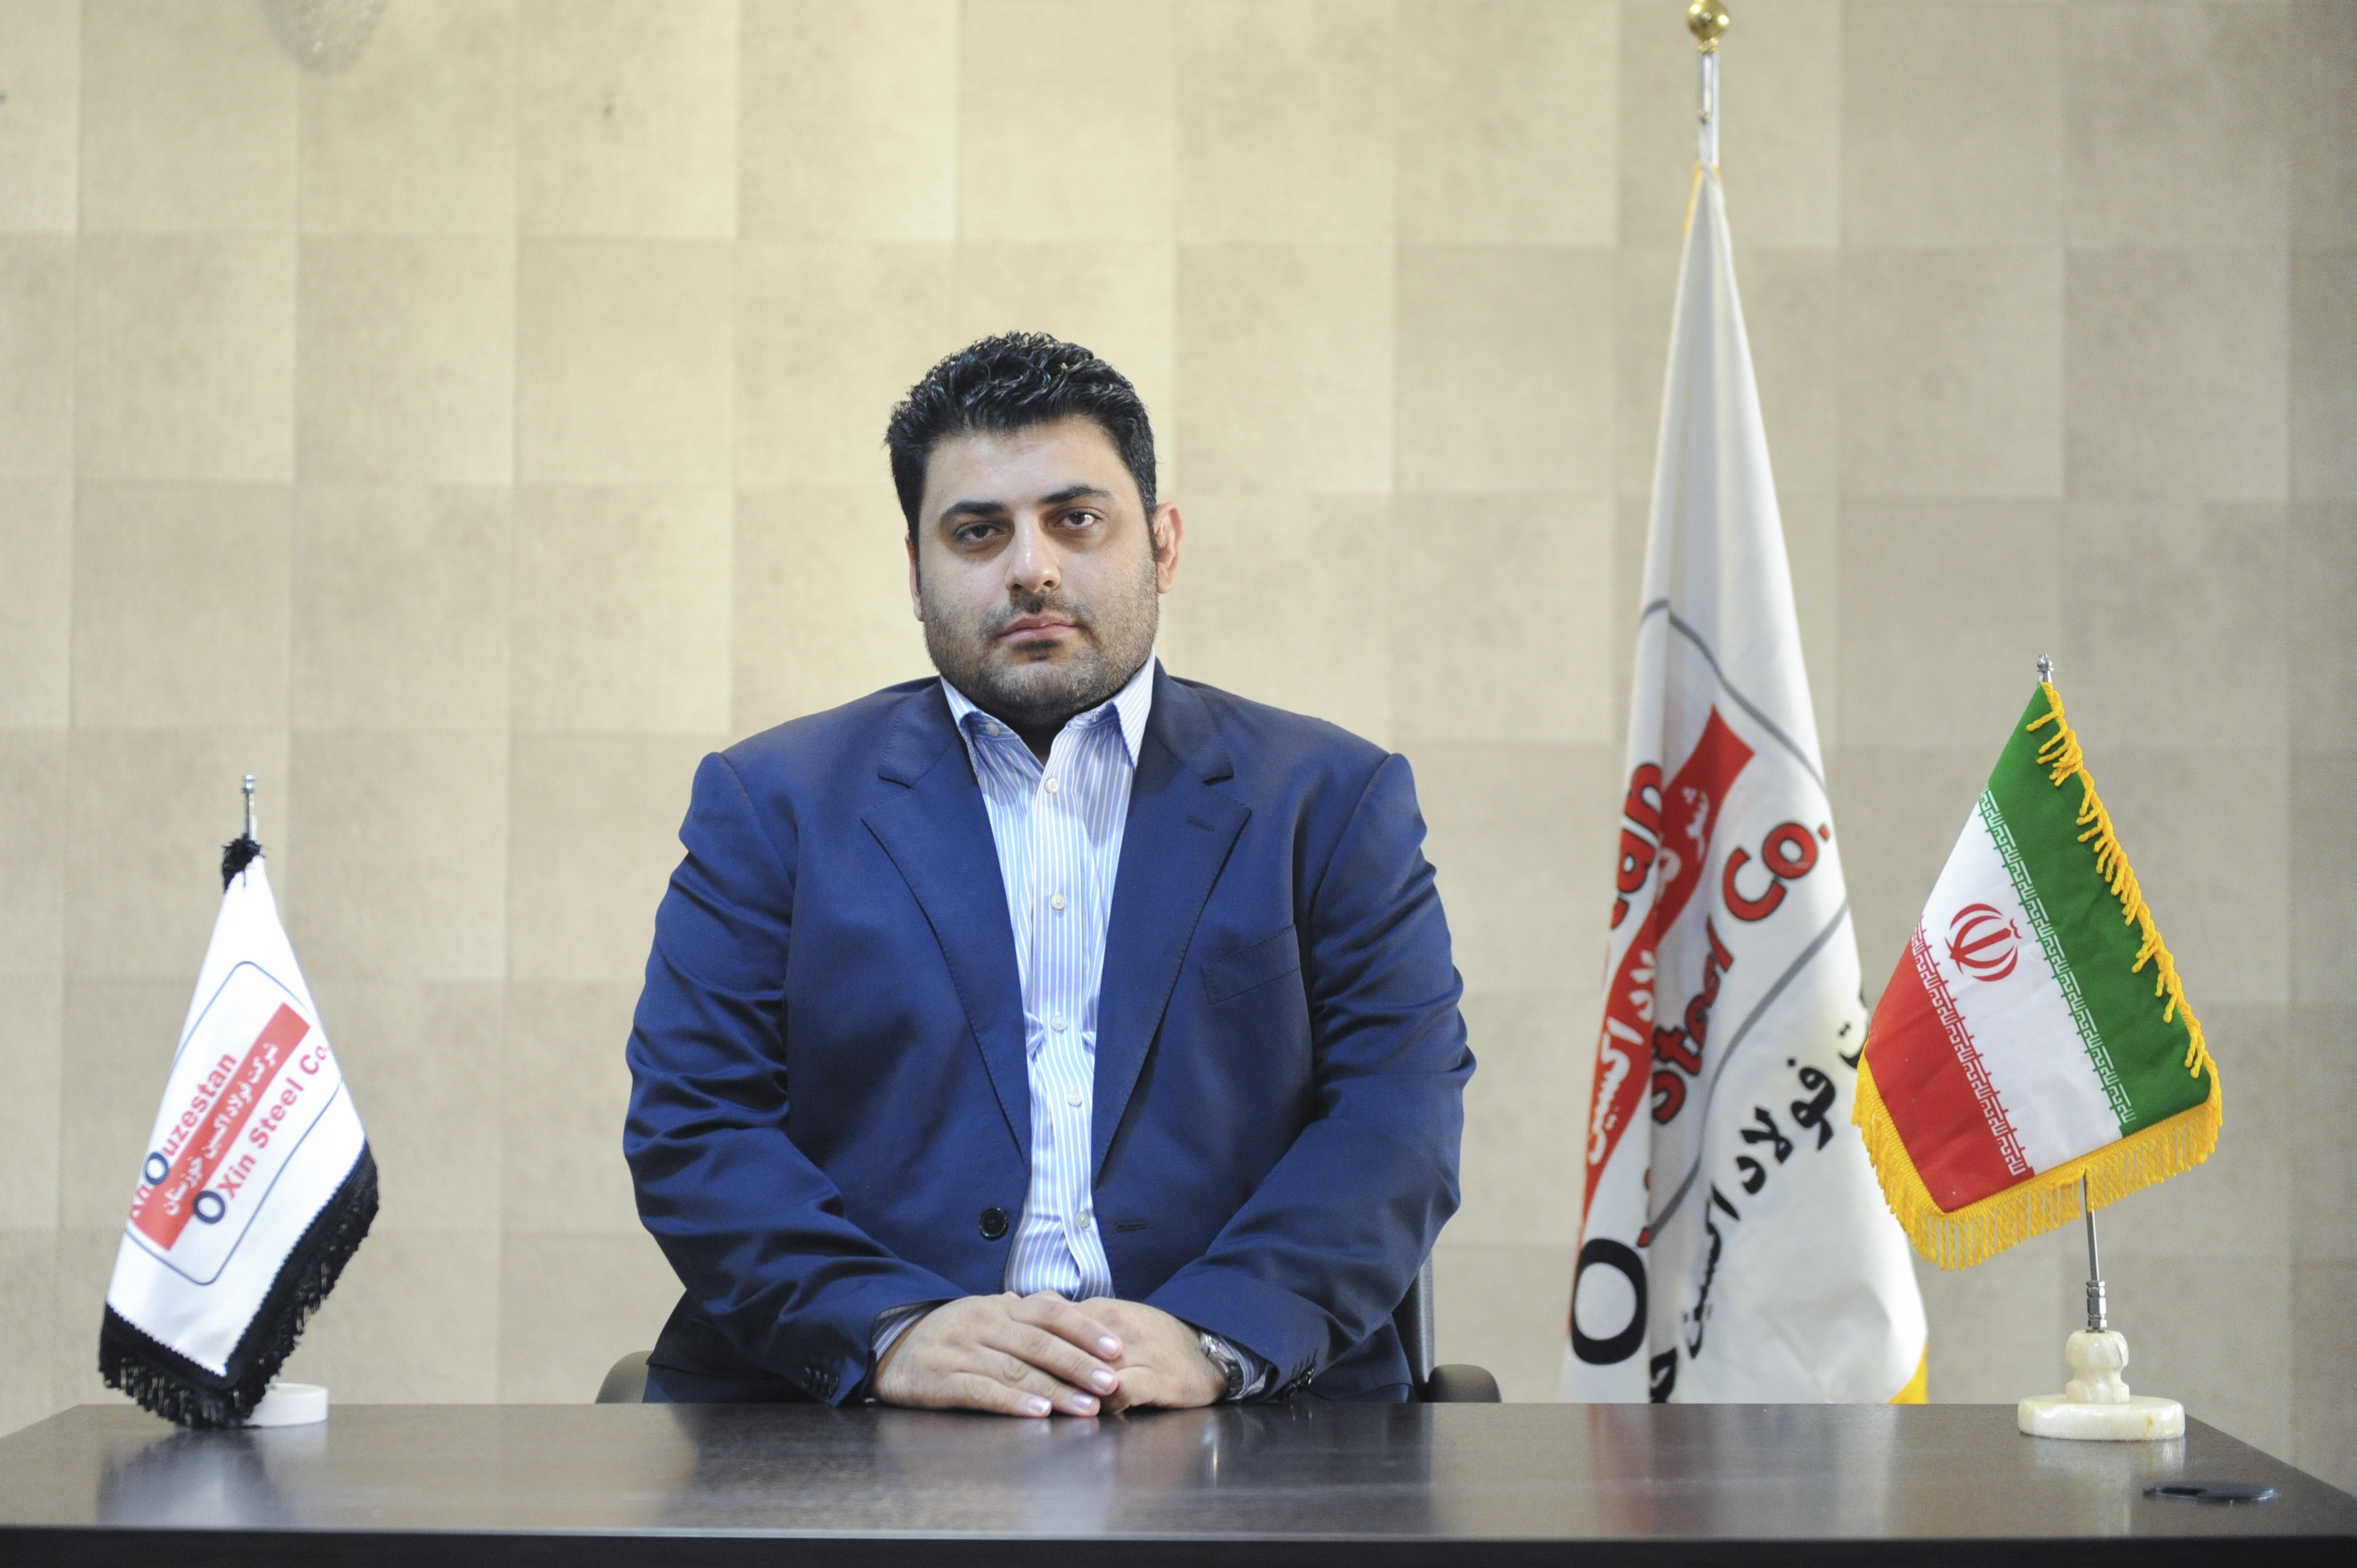 حسام خوشبین فر نائب رئیس هیئت مدیره شرکت فولاد اکسین خوزستان:ورق های فولاد اکسین پاسخگوی نیازهای صنعت نفت و گاز کشور است/ از واردات محصولاتی که مشابه داخلی دارد باید جلوگیری شود